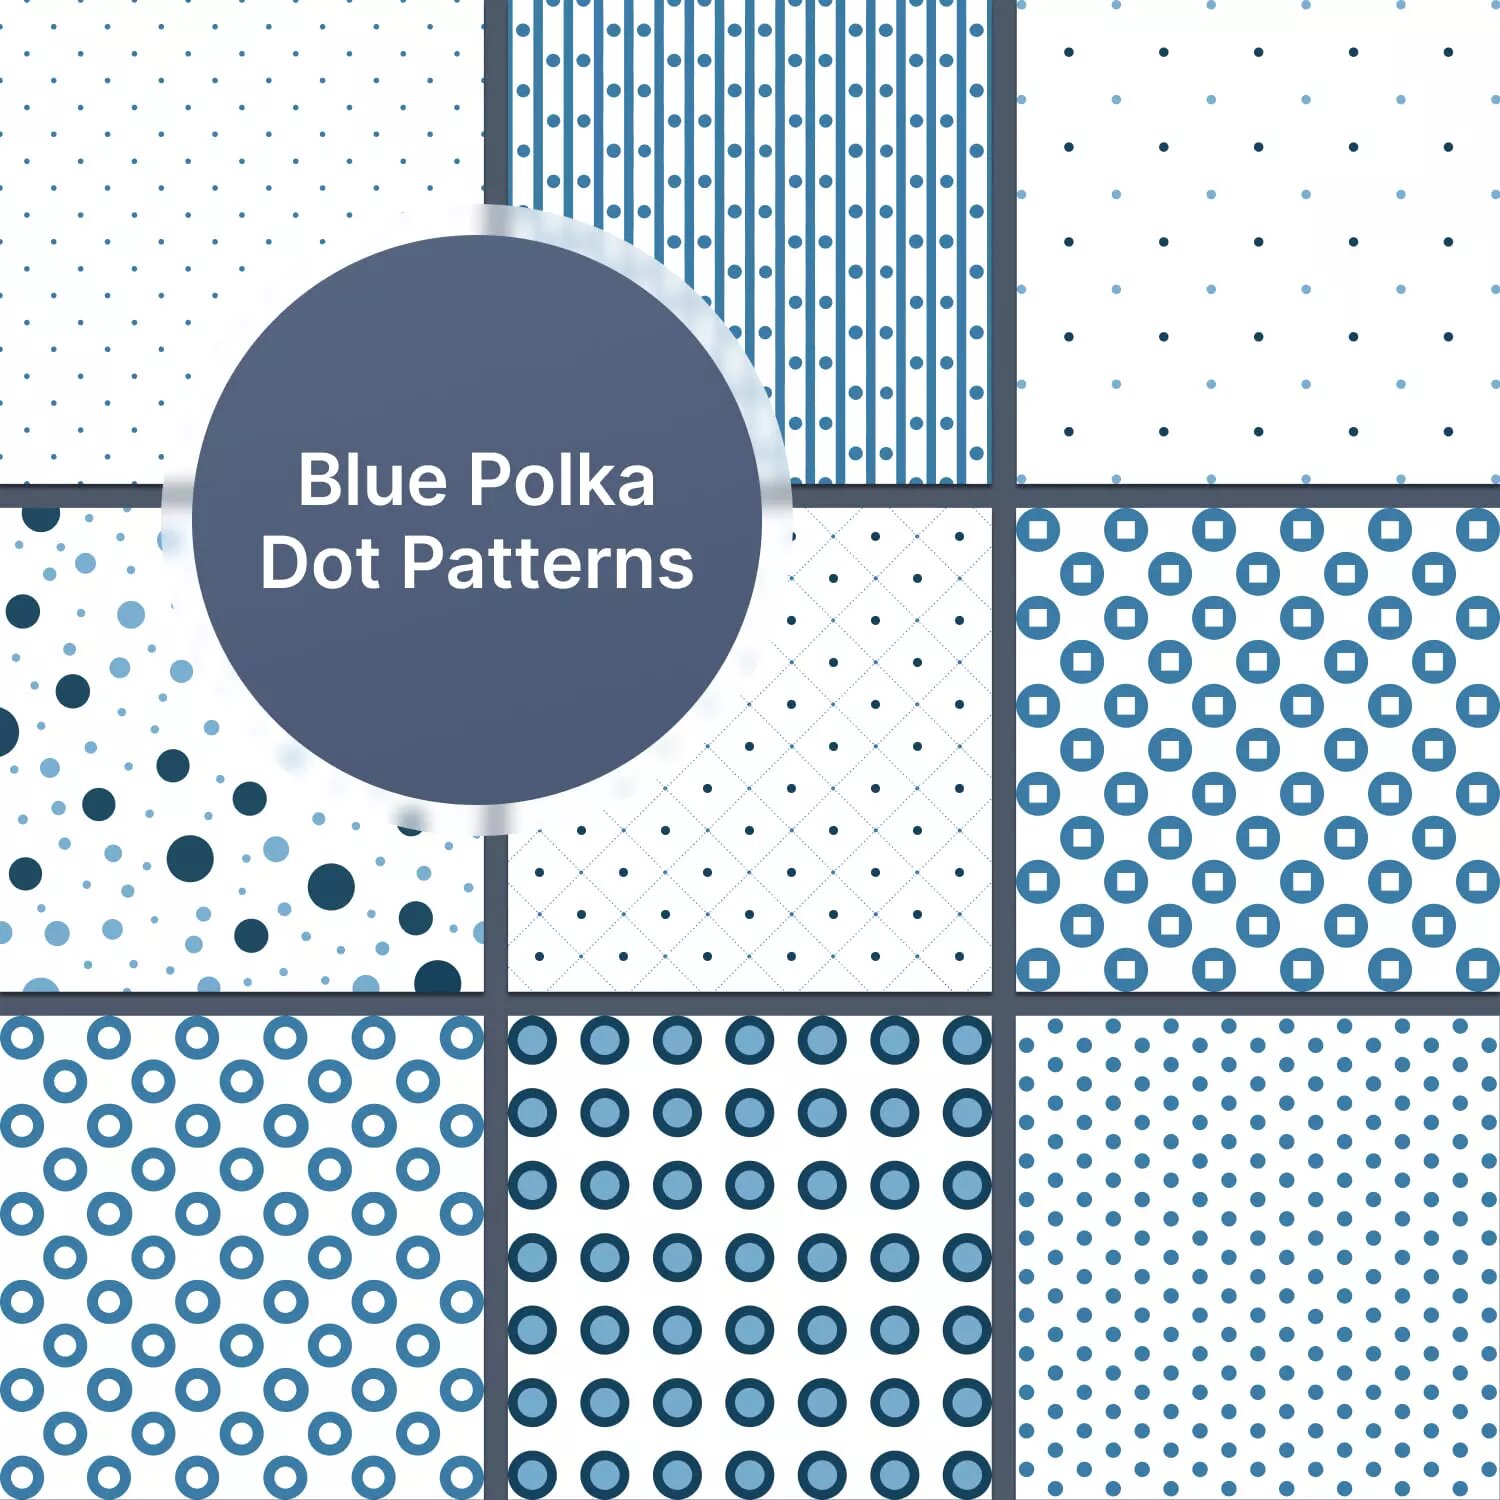 Blue Polka Dot Patterns Preview 5.